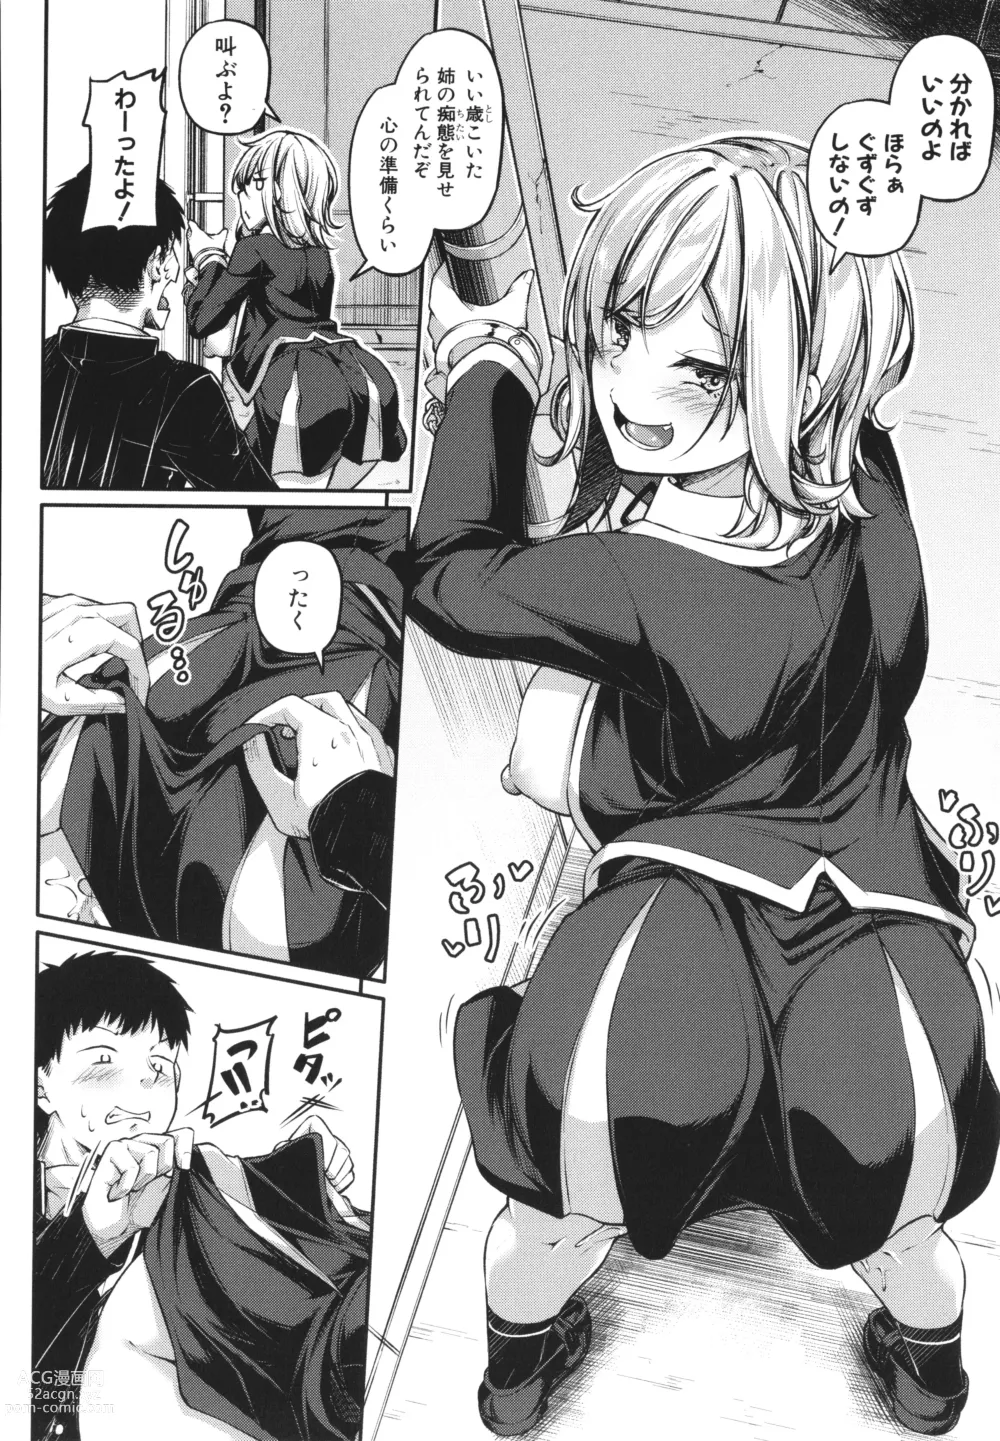 Page 190 of manga Ecchi na Nurse-tachi ga Koshitsu de Koubi Shite Kurerutte Hontou Desuka!?